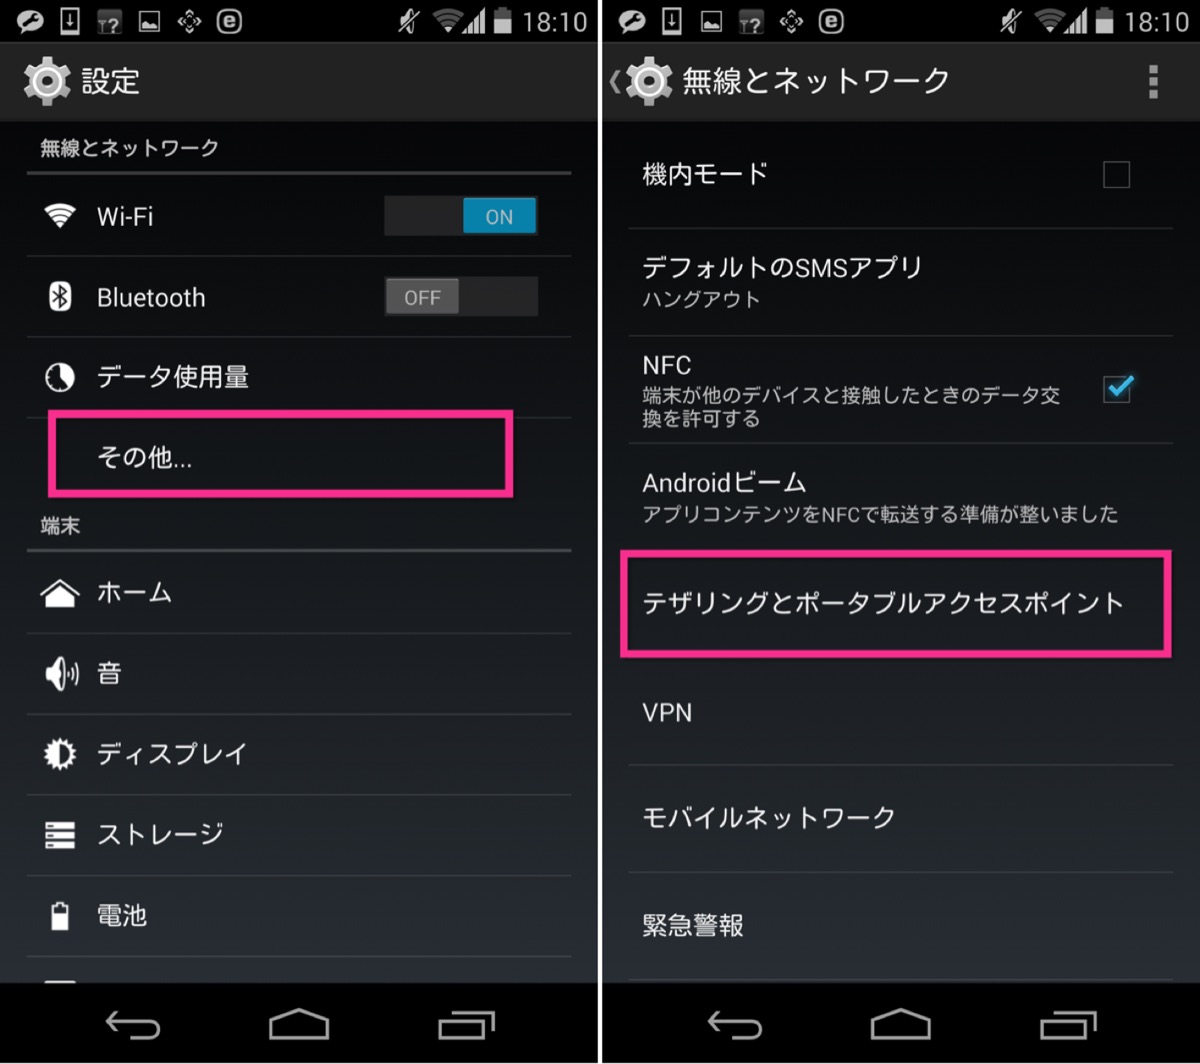 Nexus 5+IIJmioでテザリングする方法